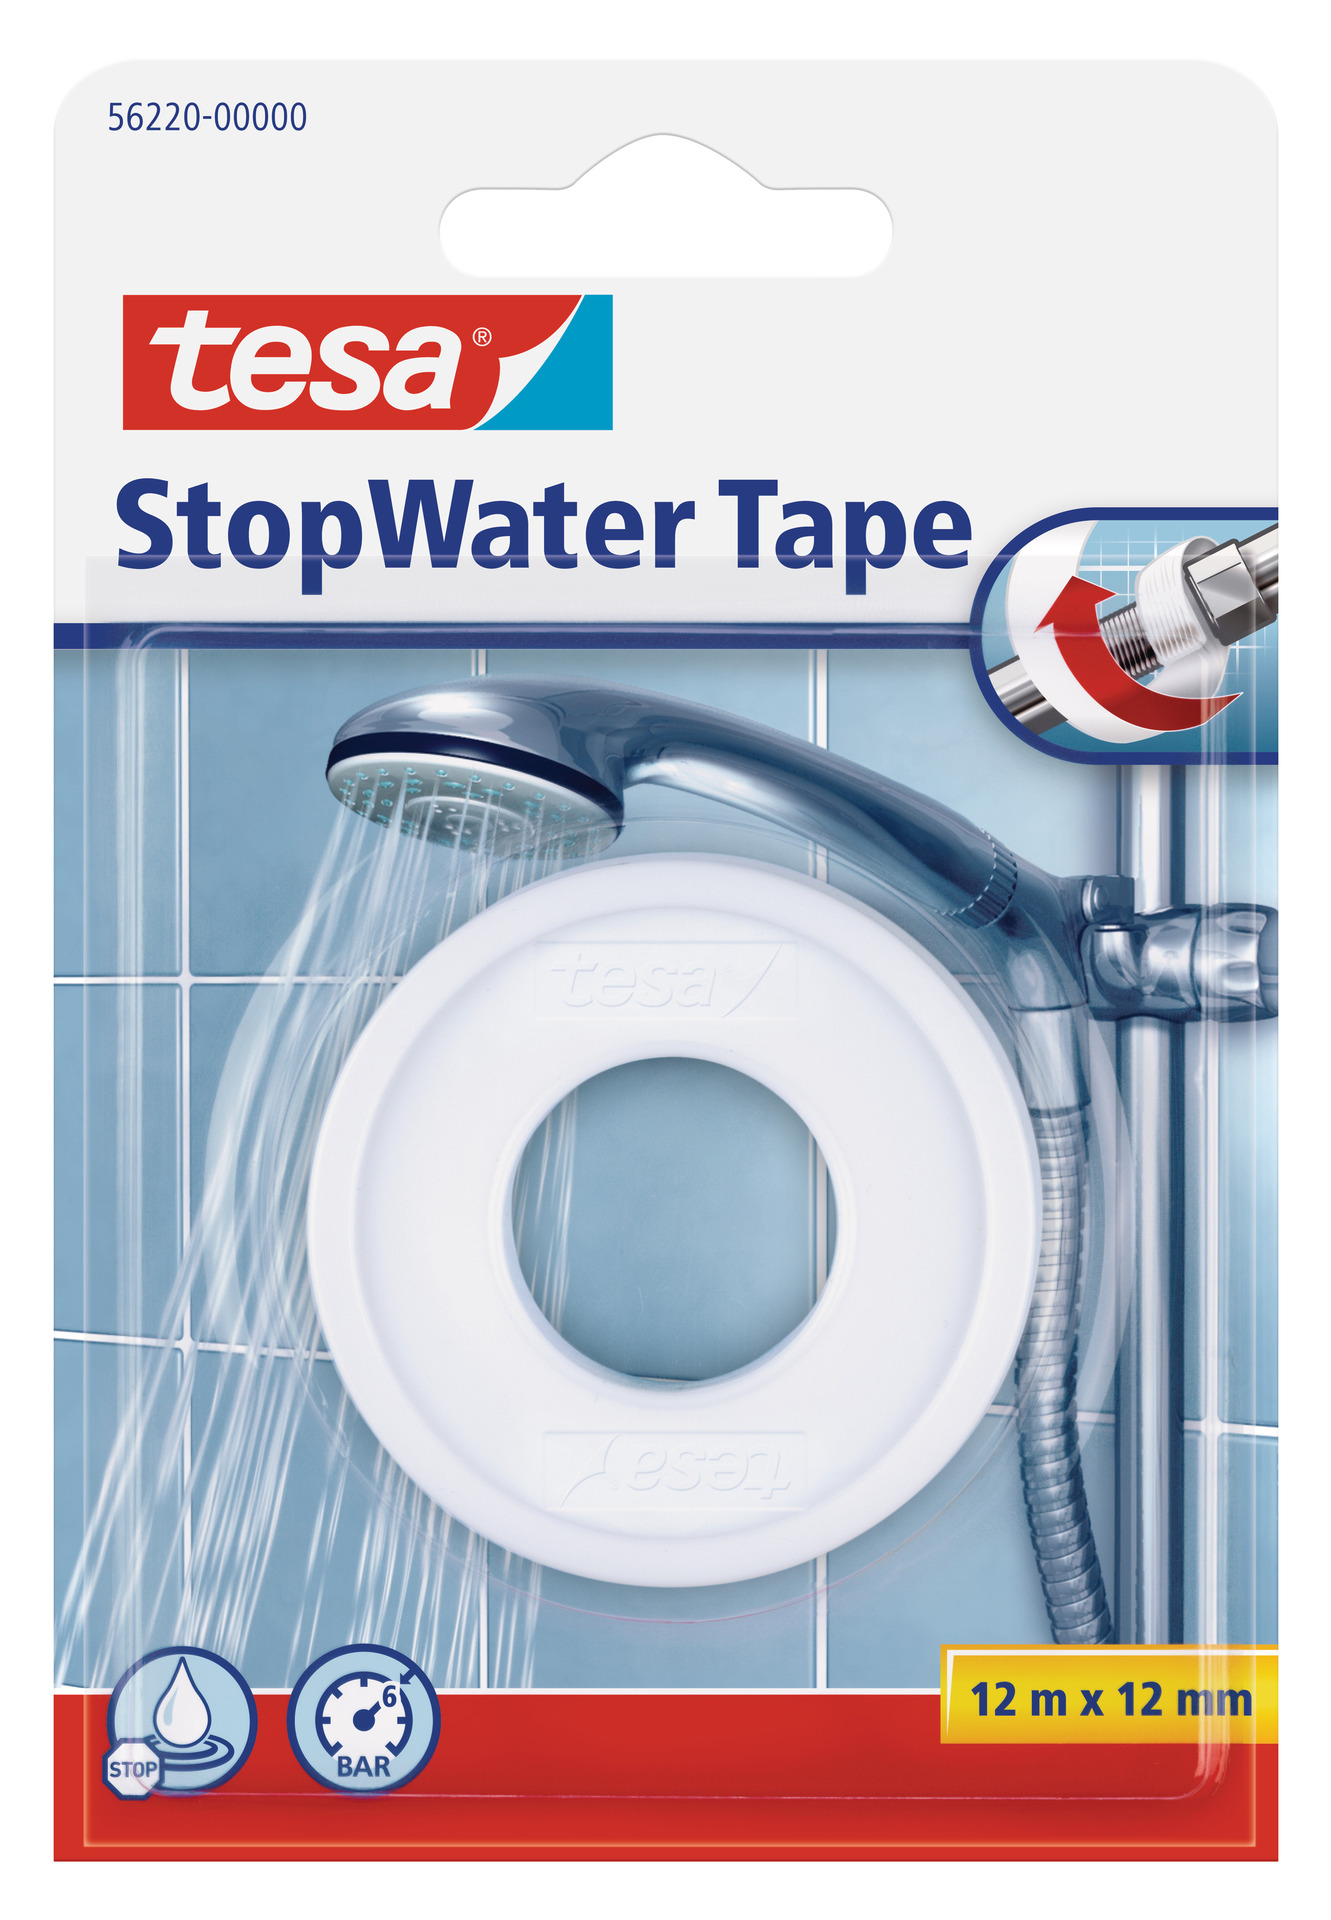 TESA SE Tesa StopWater Tape